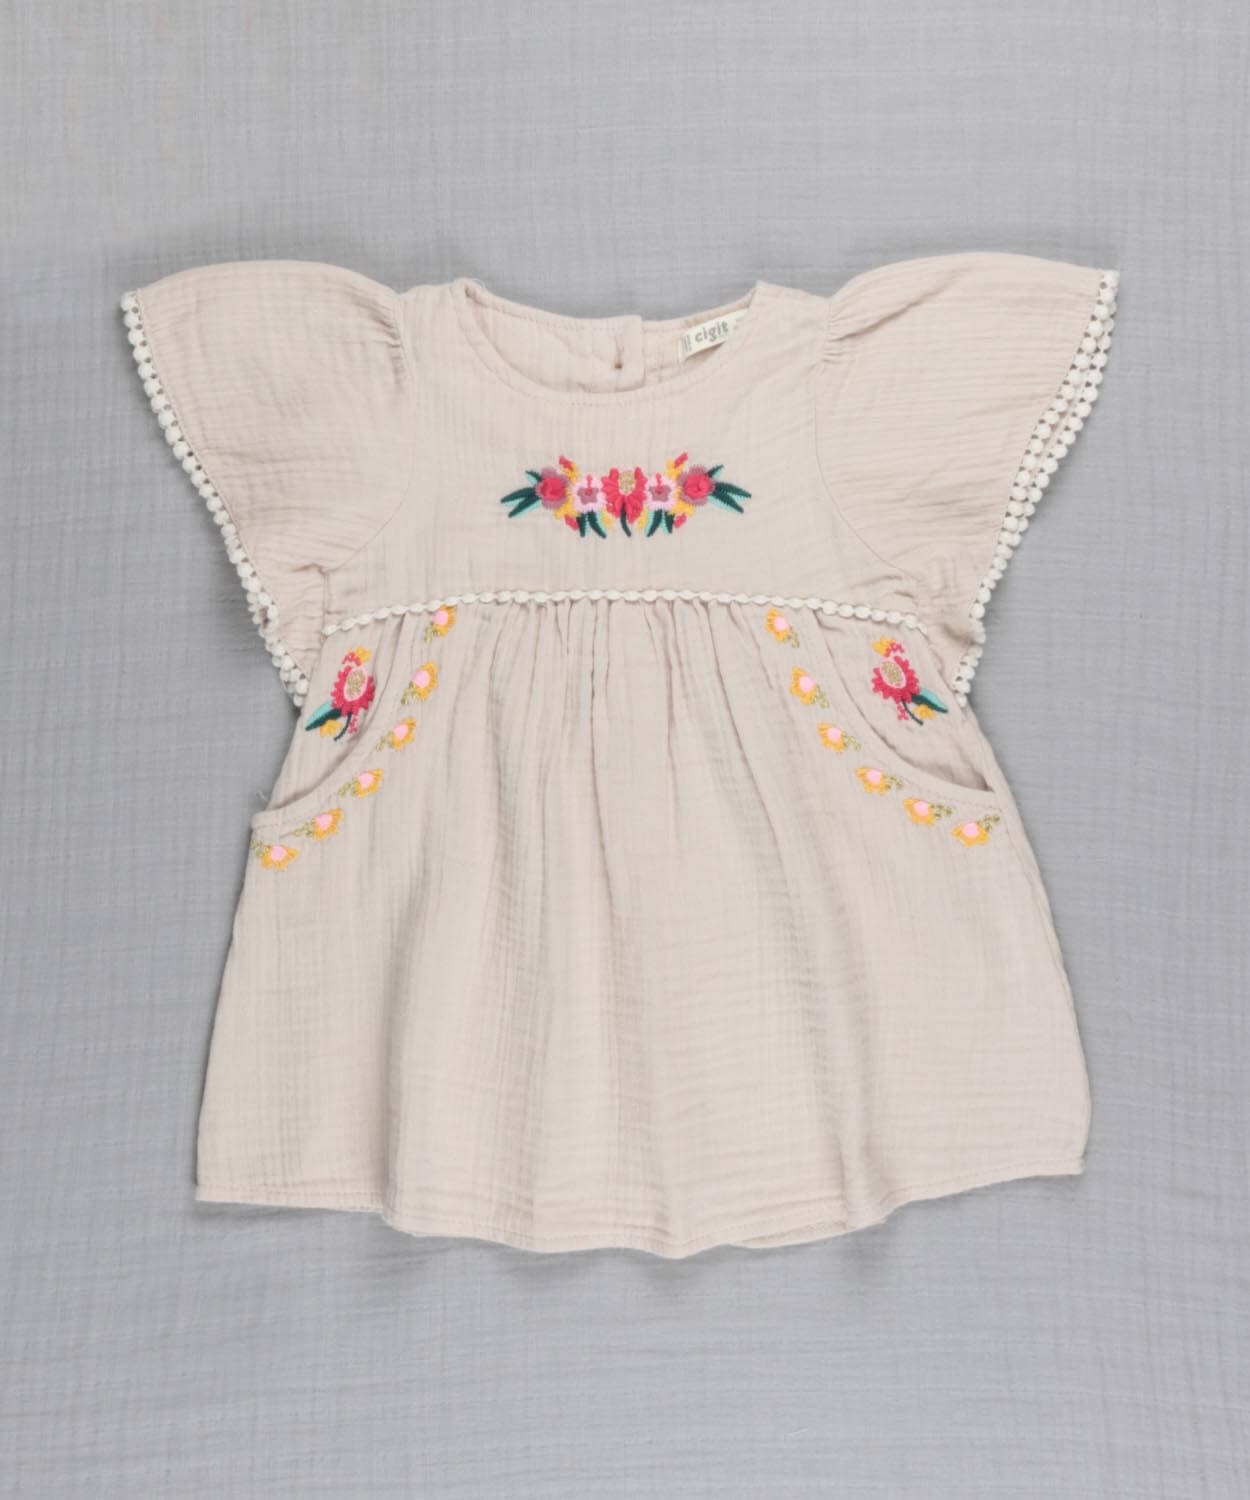 Kolu Fırfırlı Çiçek Nakışlı Müslin Kız Bebek Elbise 1-4 yaş Taş - Cigit